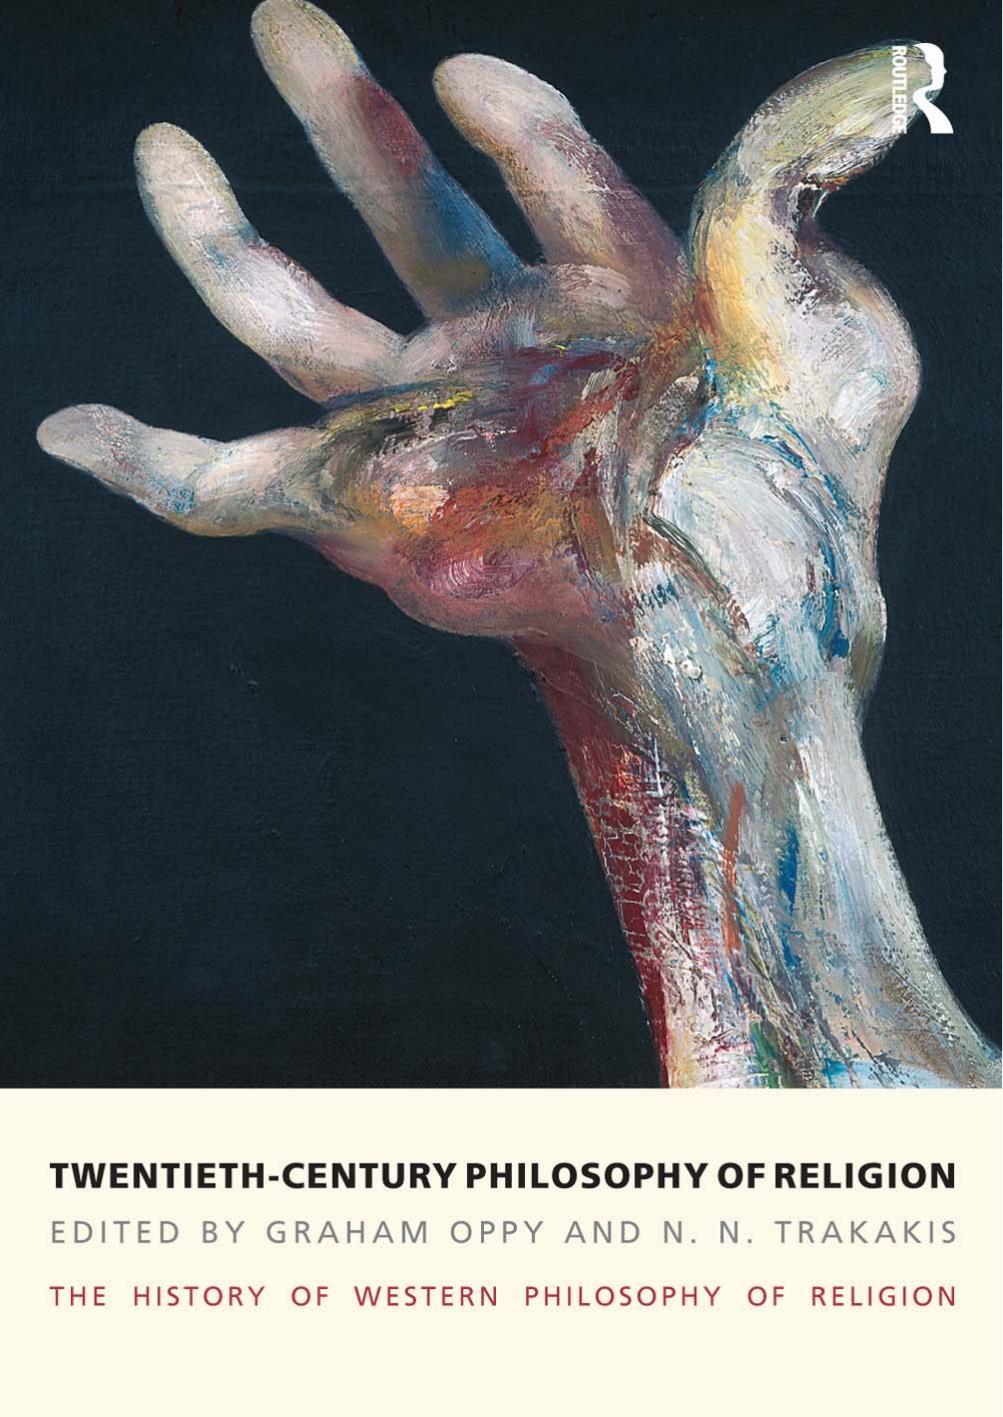 Twentieth-Century Philosophy of Religion: The History of Western Philosophy of Religion